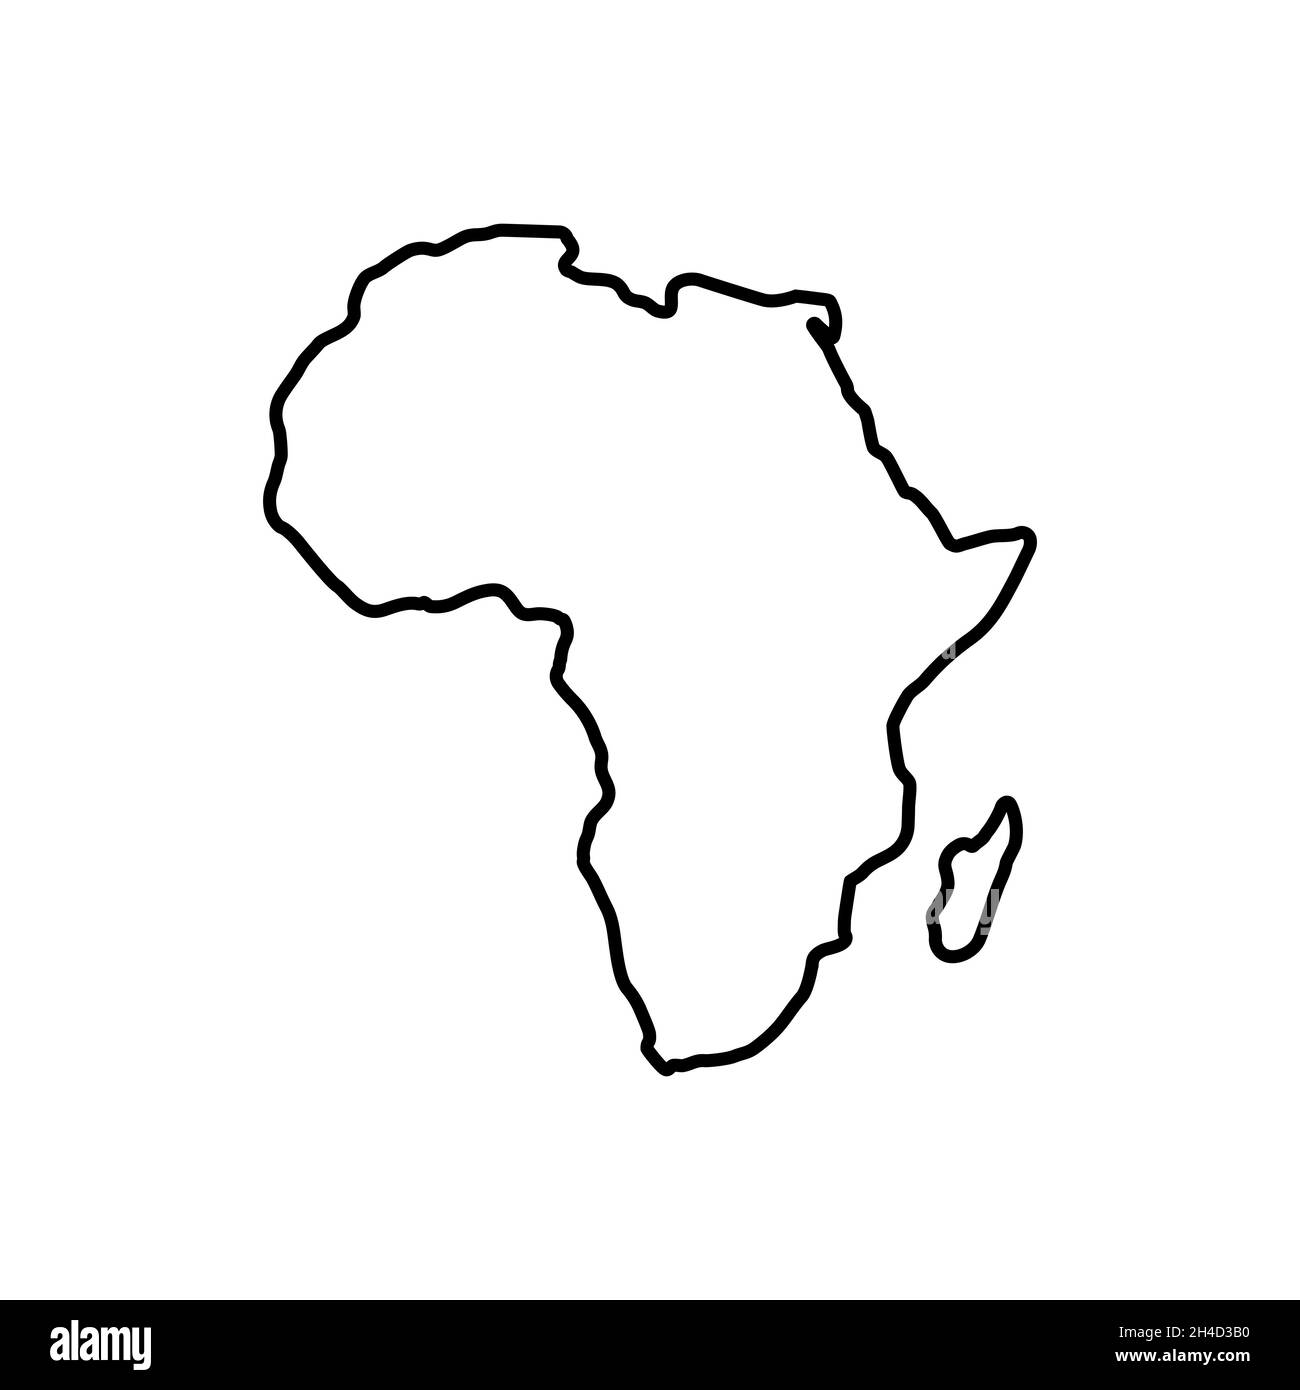 Stil der Symbolzeile der Afrika-Karte Stock Vektor